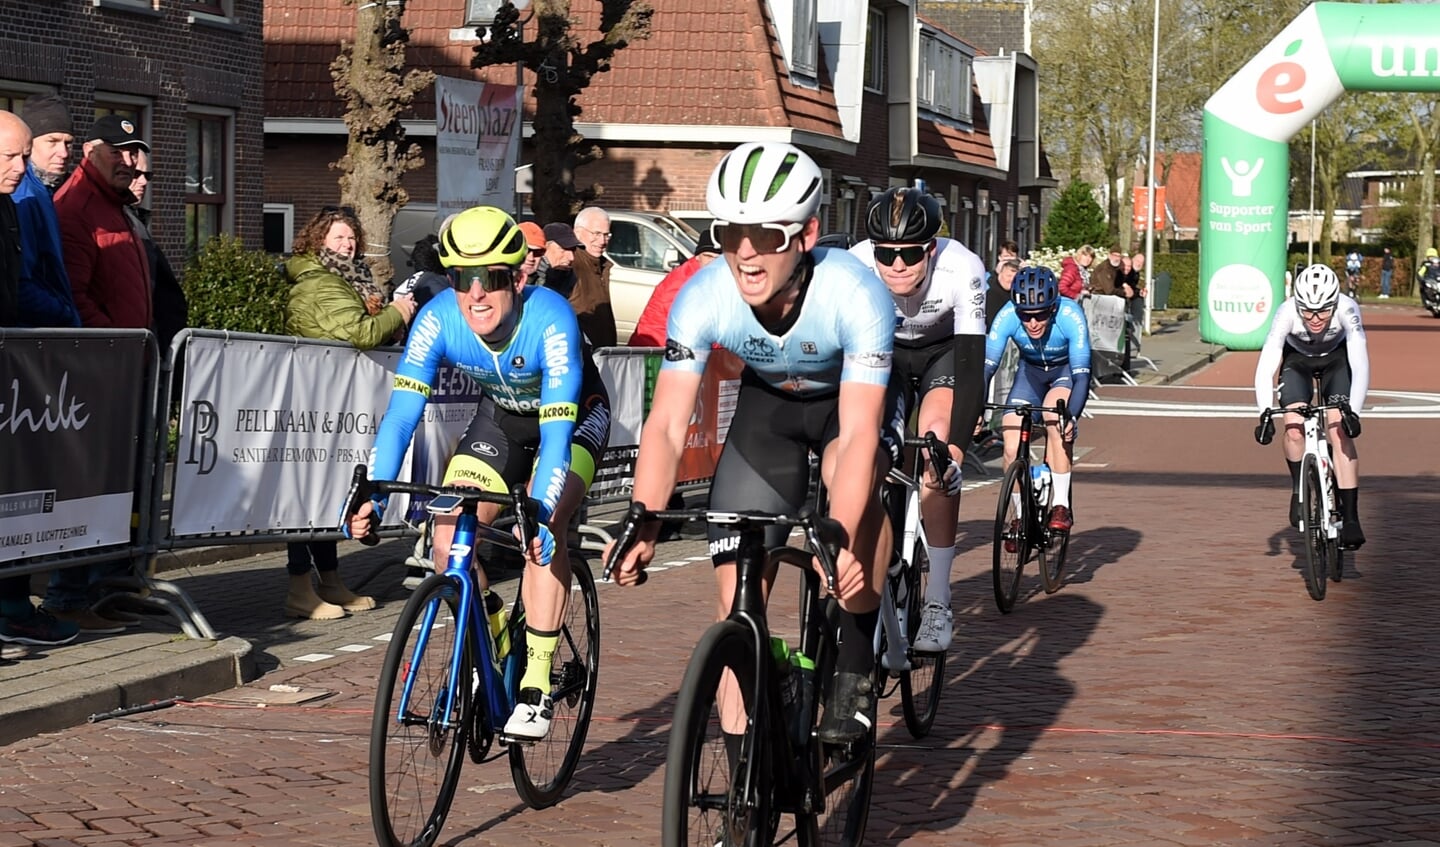 • Peter Skov Lauritzen sprint naar de zege in Lexmond.